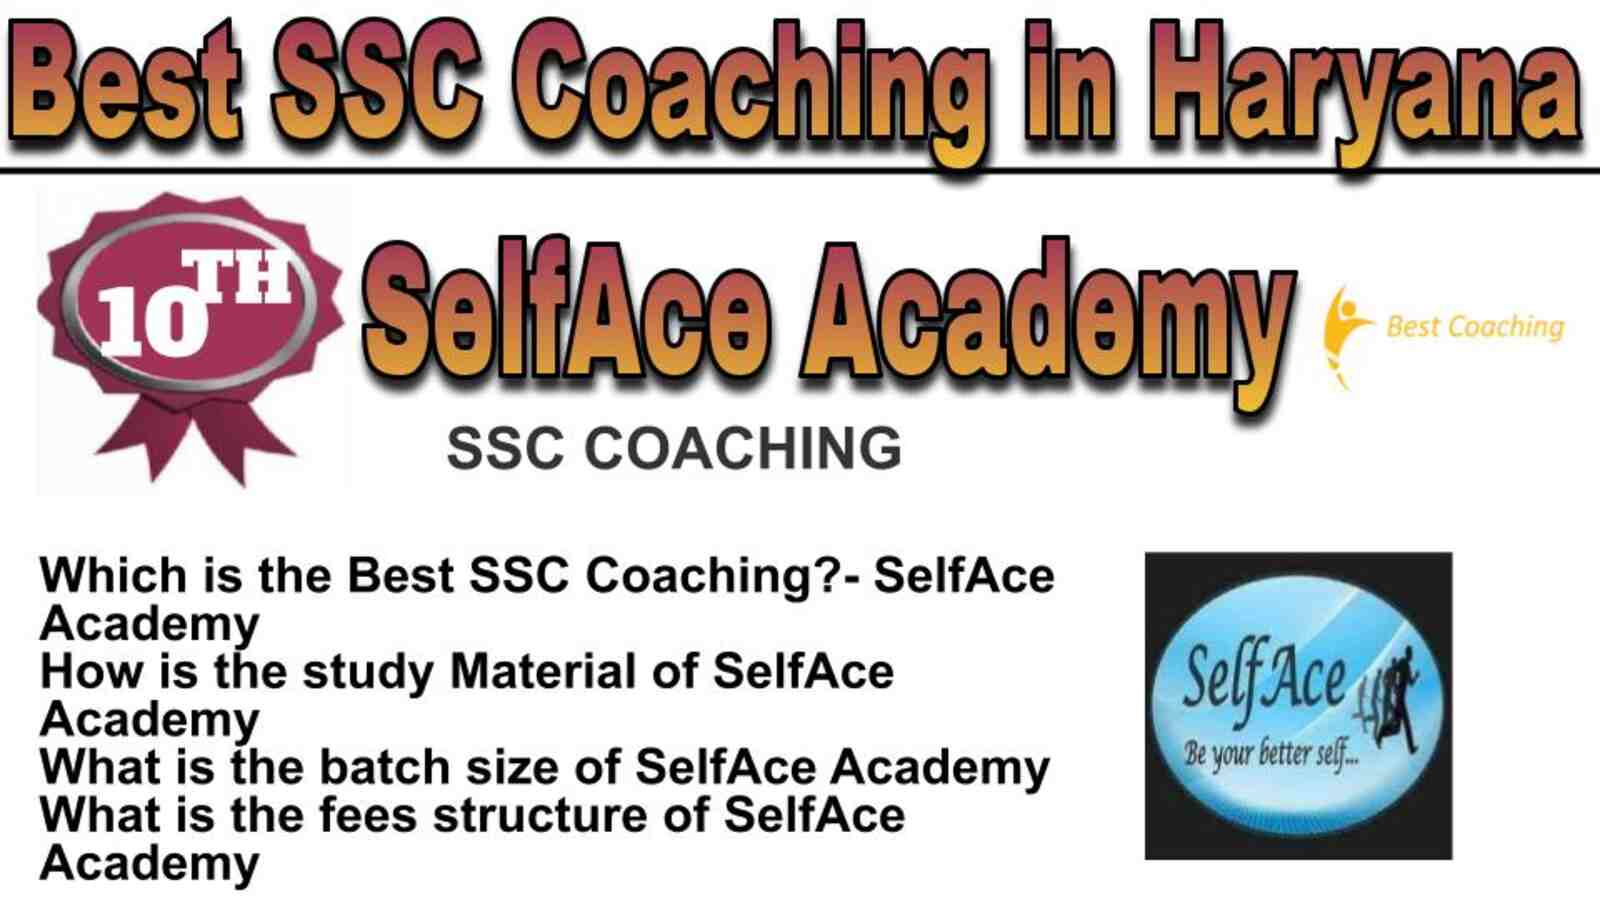 Rank 10 best SSC coaching in Haryana